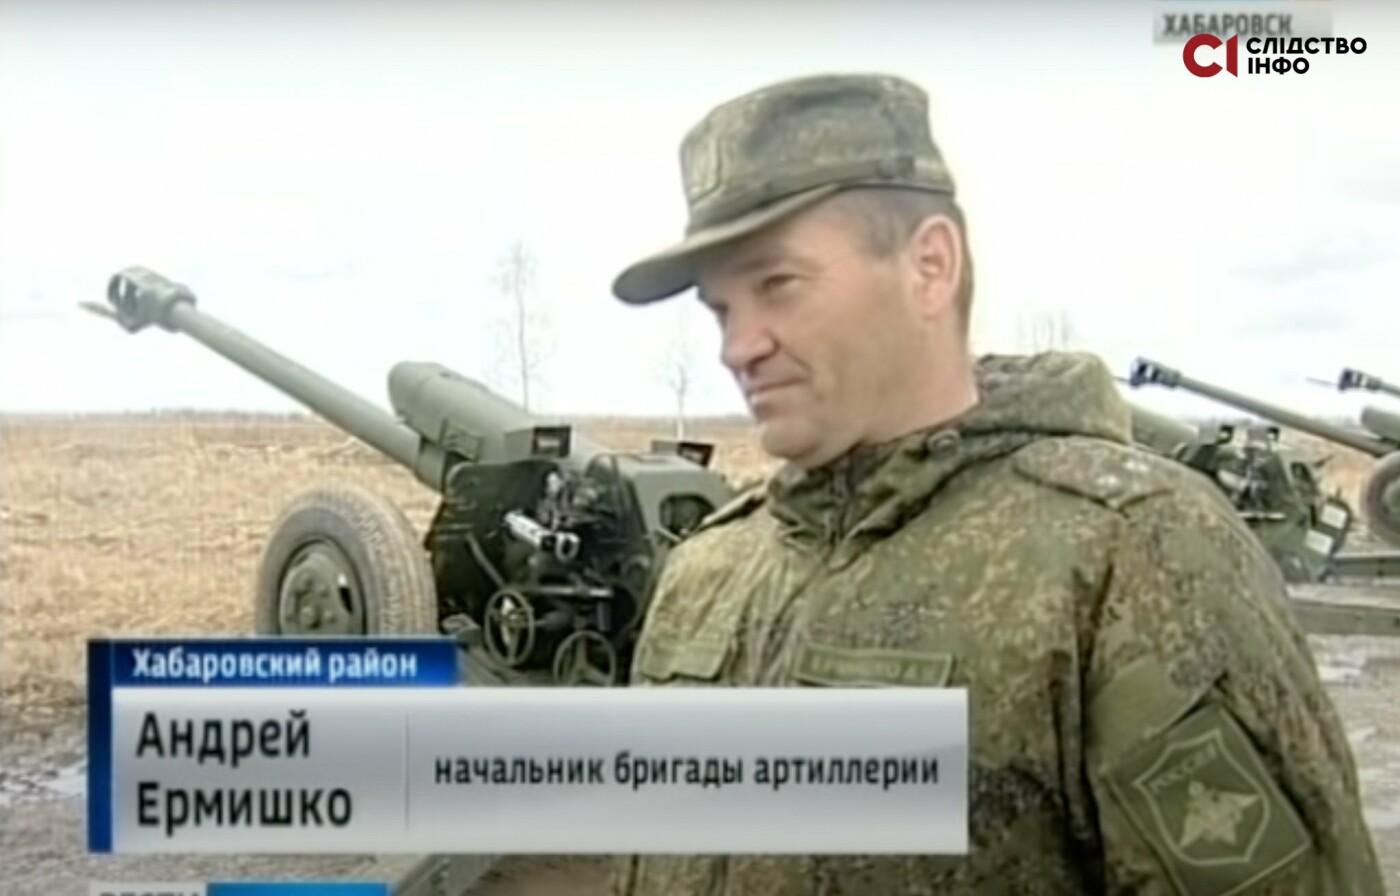 Підполковник Андрєй Єрмішко  У своїх соцмережах він зазначає, що служить в російській армії з 1990-го року